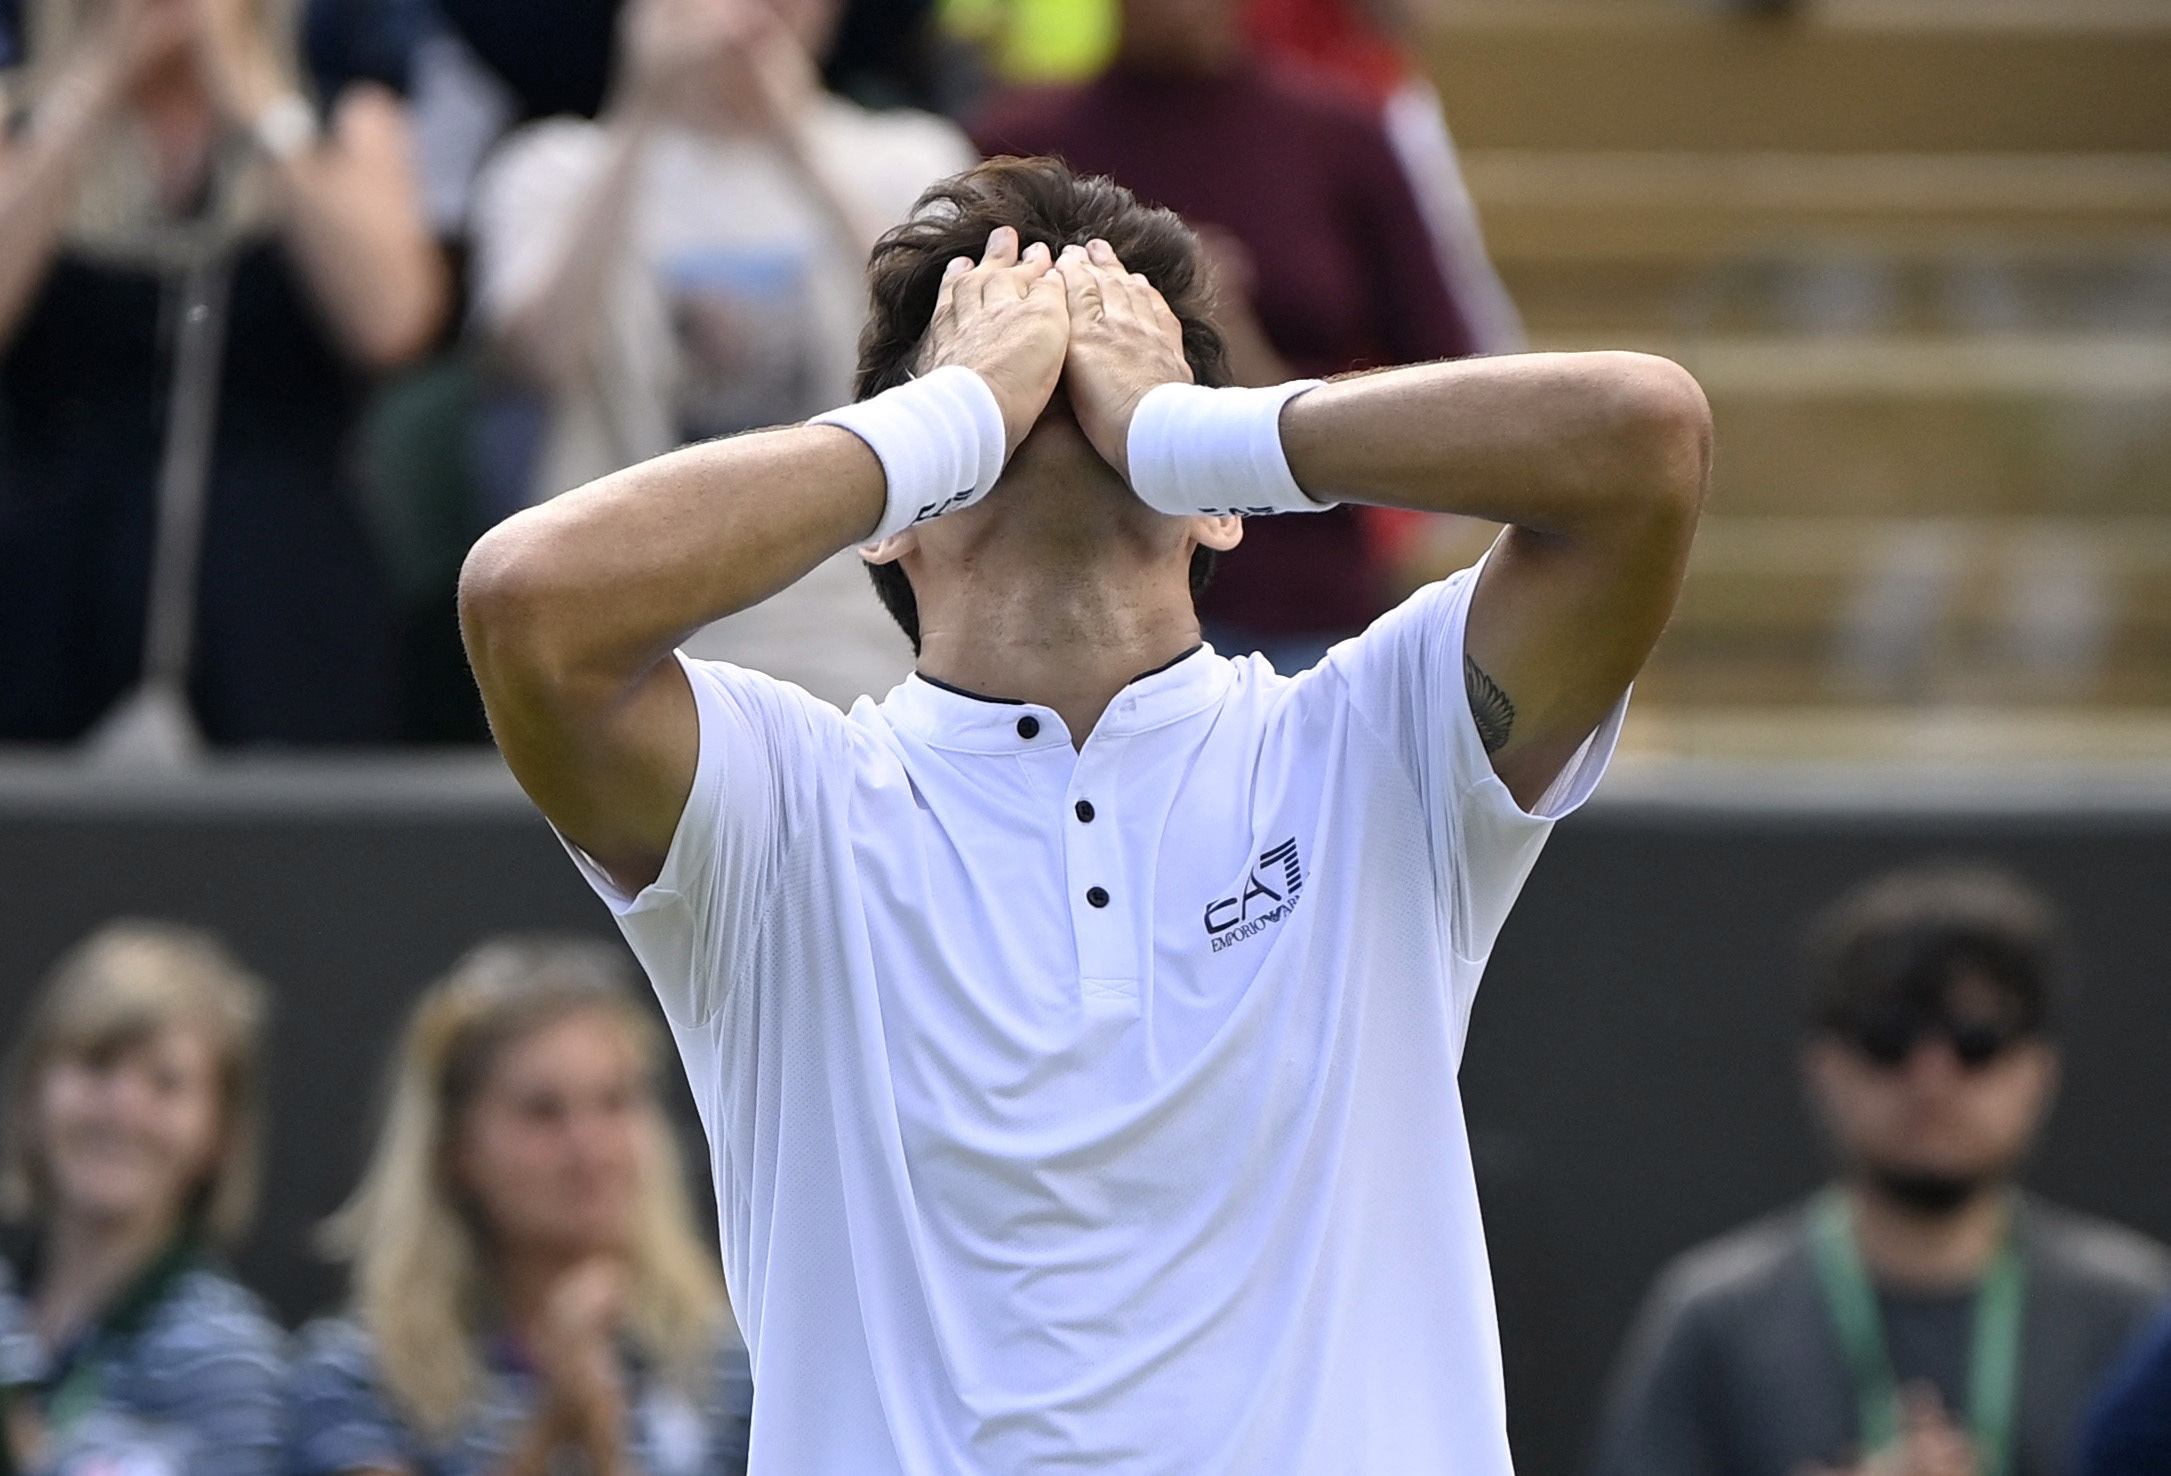 Garin jugará cuartos de final de Wimbledon por primera vez en su carrera (Reuters)